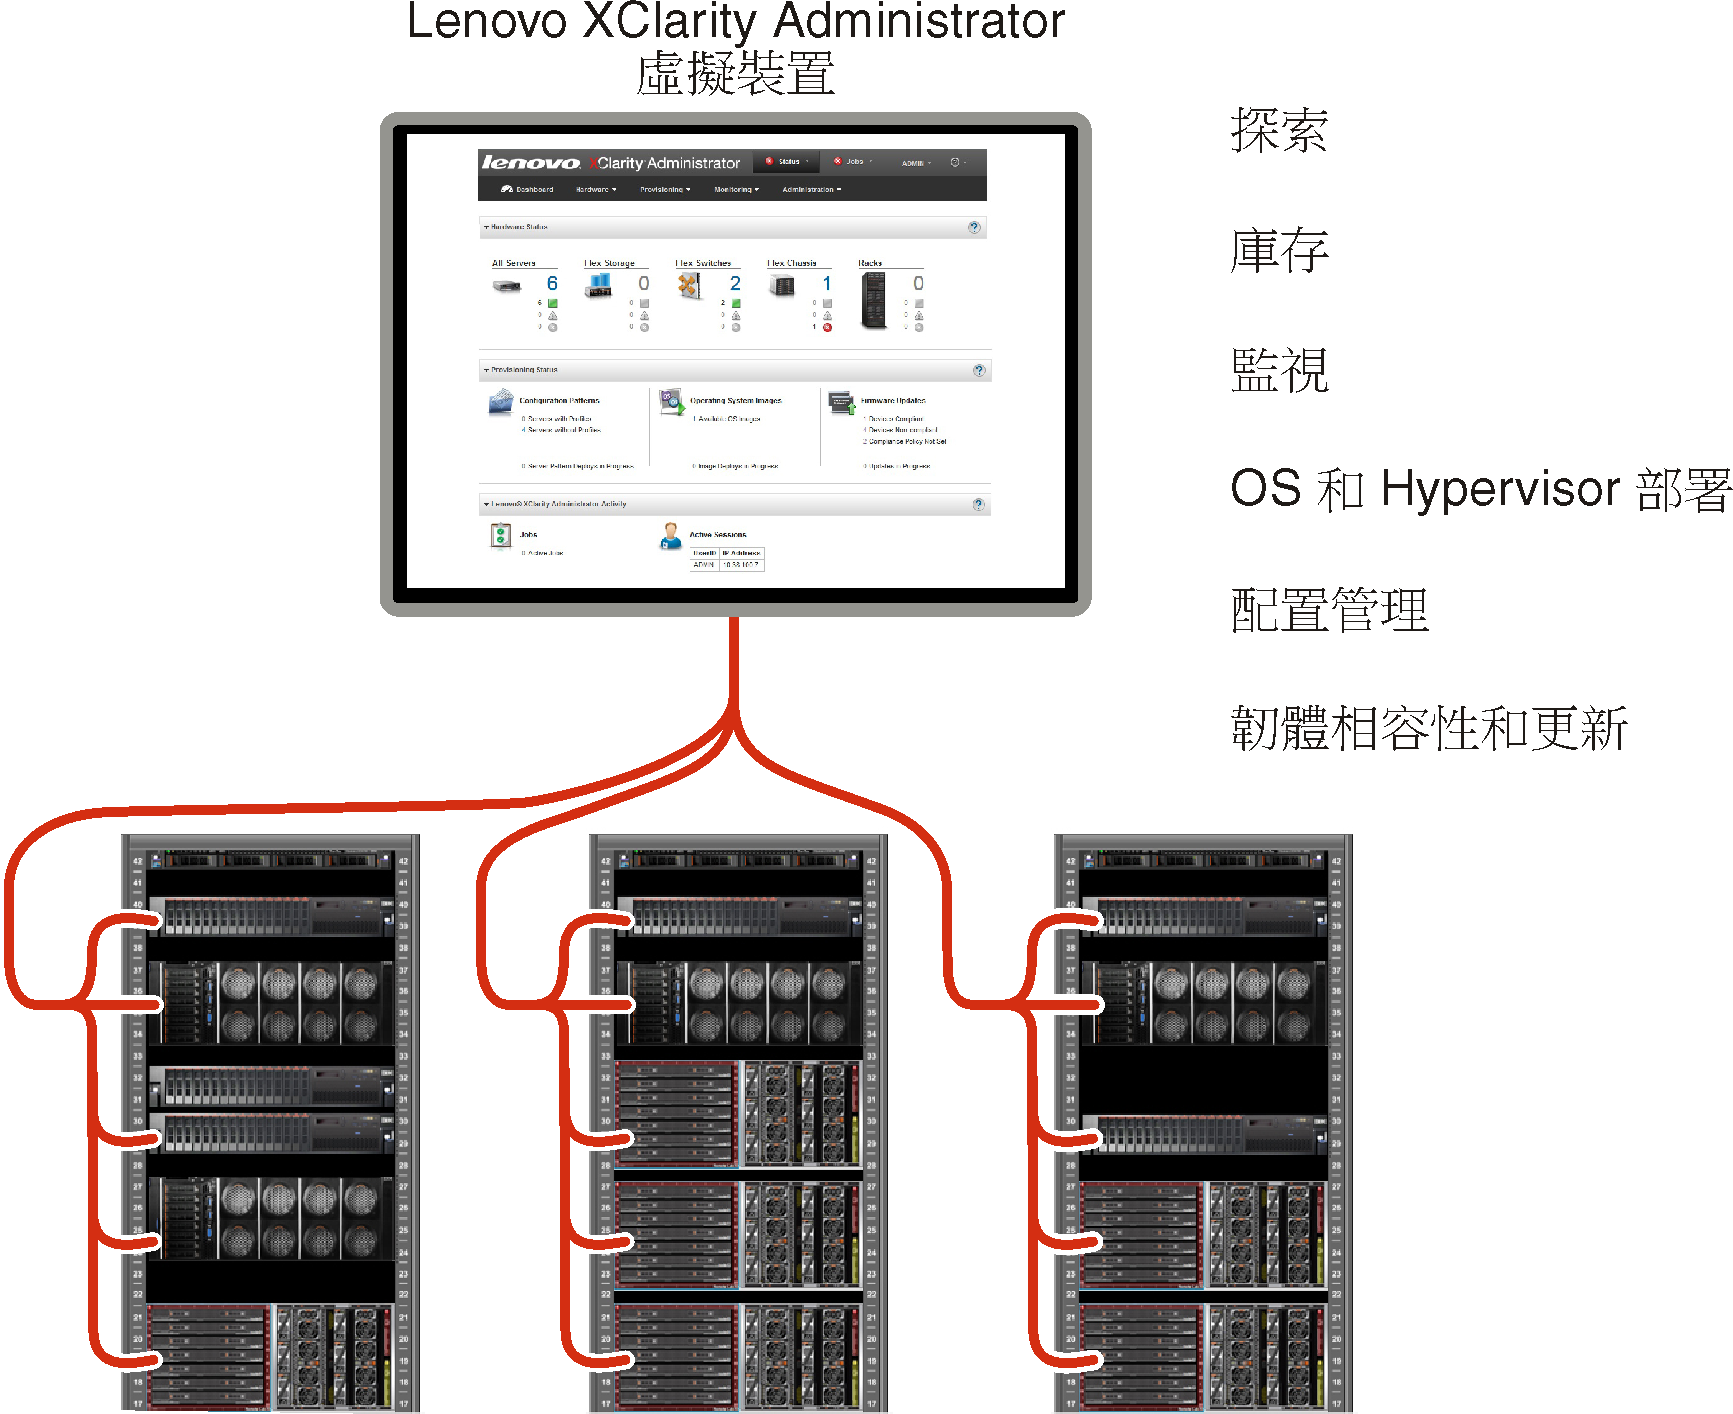 顯示 Lenovo XClarity Administrator 管理多個機箱的圖形，並列出 Lenovo XClarity Administrator 的主要功能。